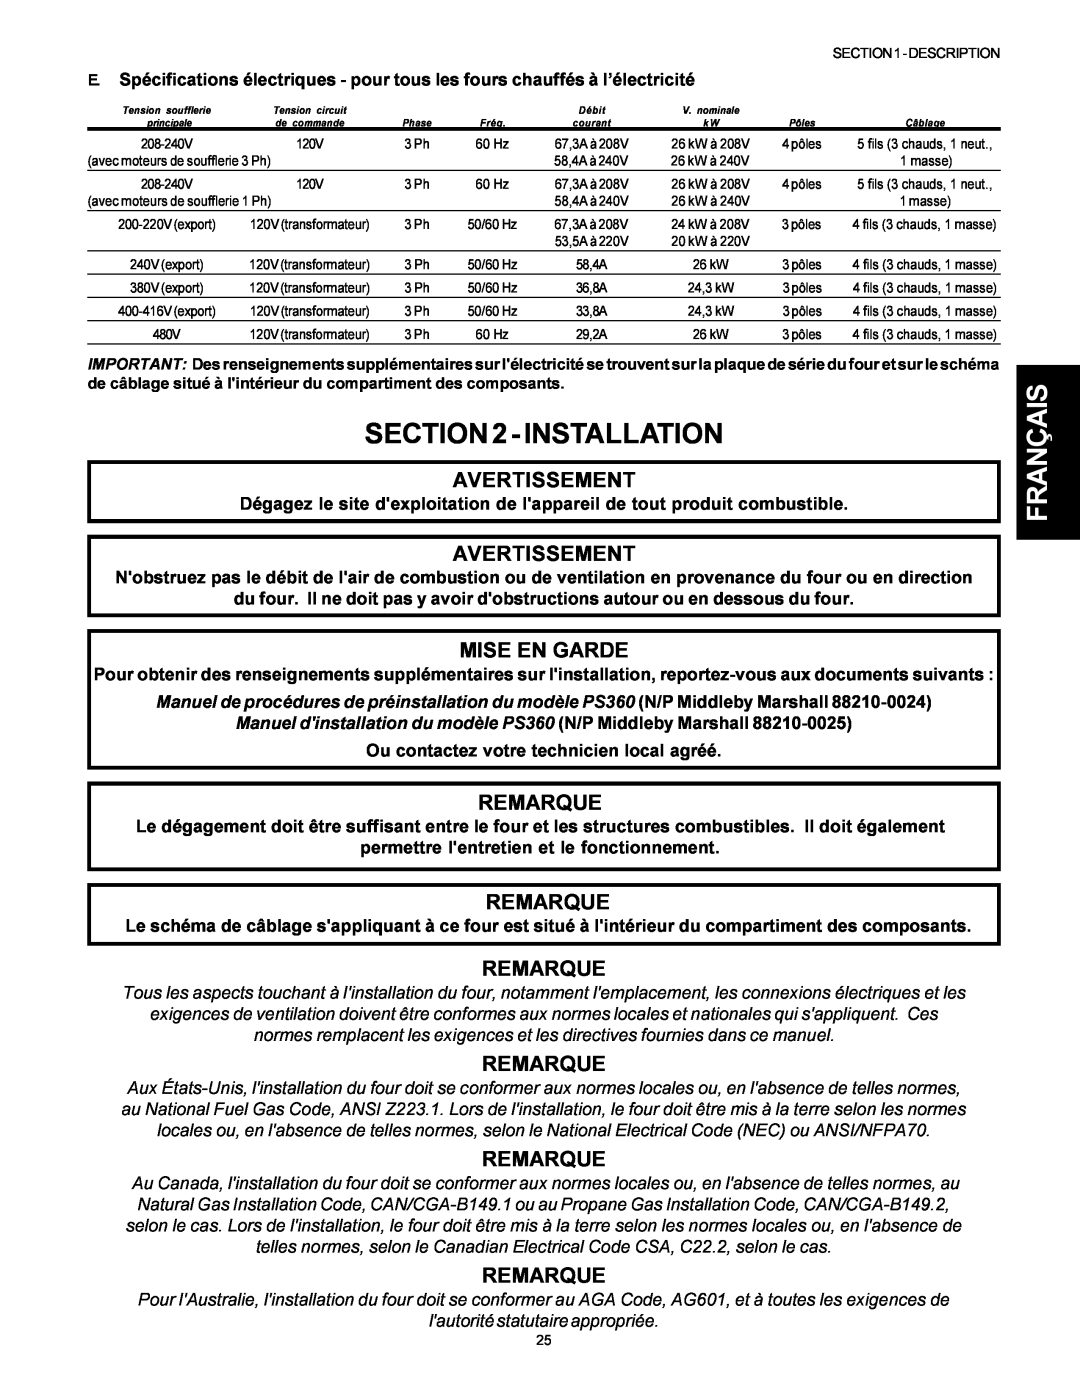 Middleby Marshall PS314SBI installation manual Installation, Français, Avertissement, Mise En Garde, Remarque 